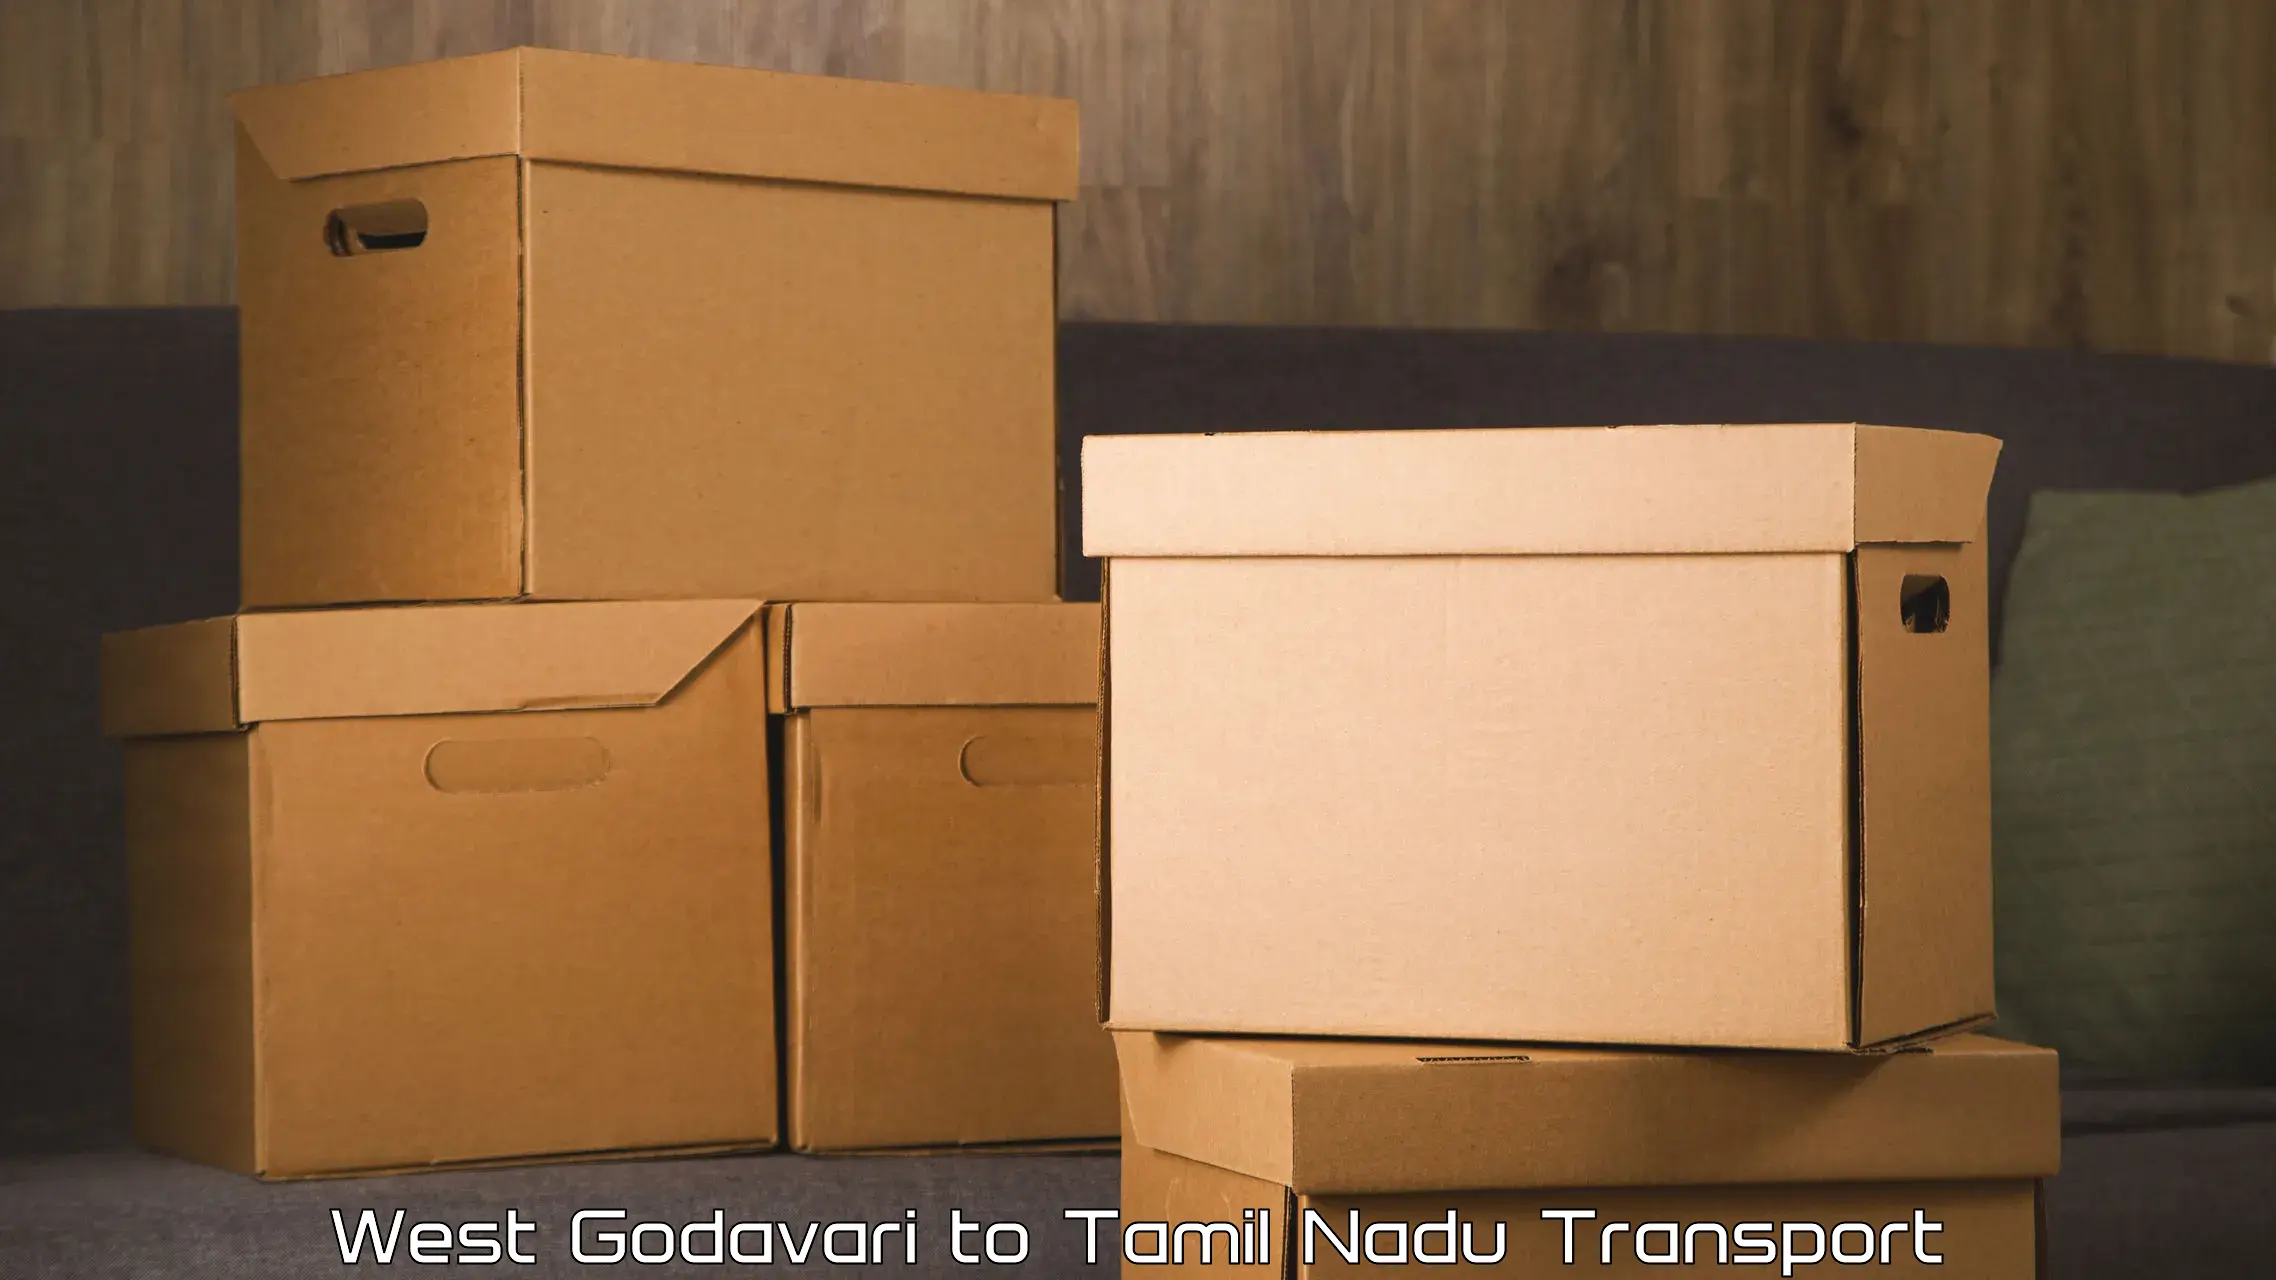 Delivery service West Godavari to Thondi